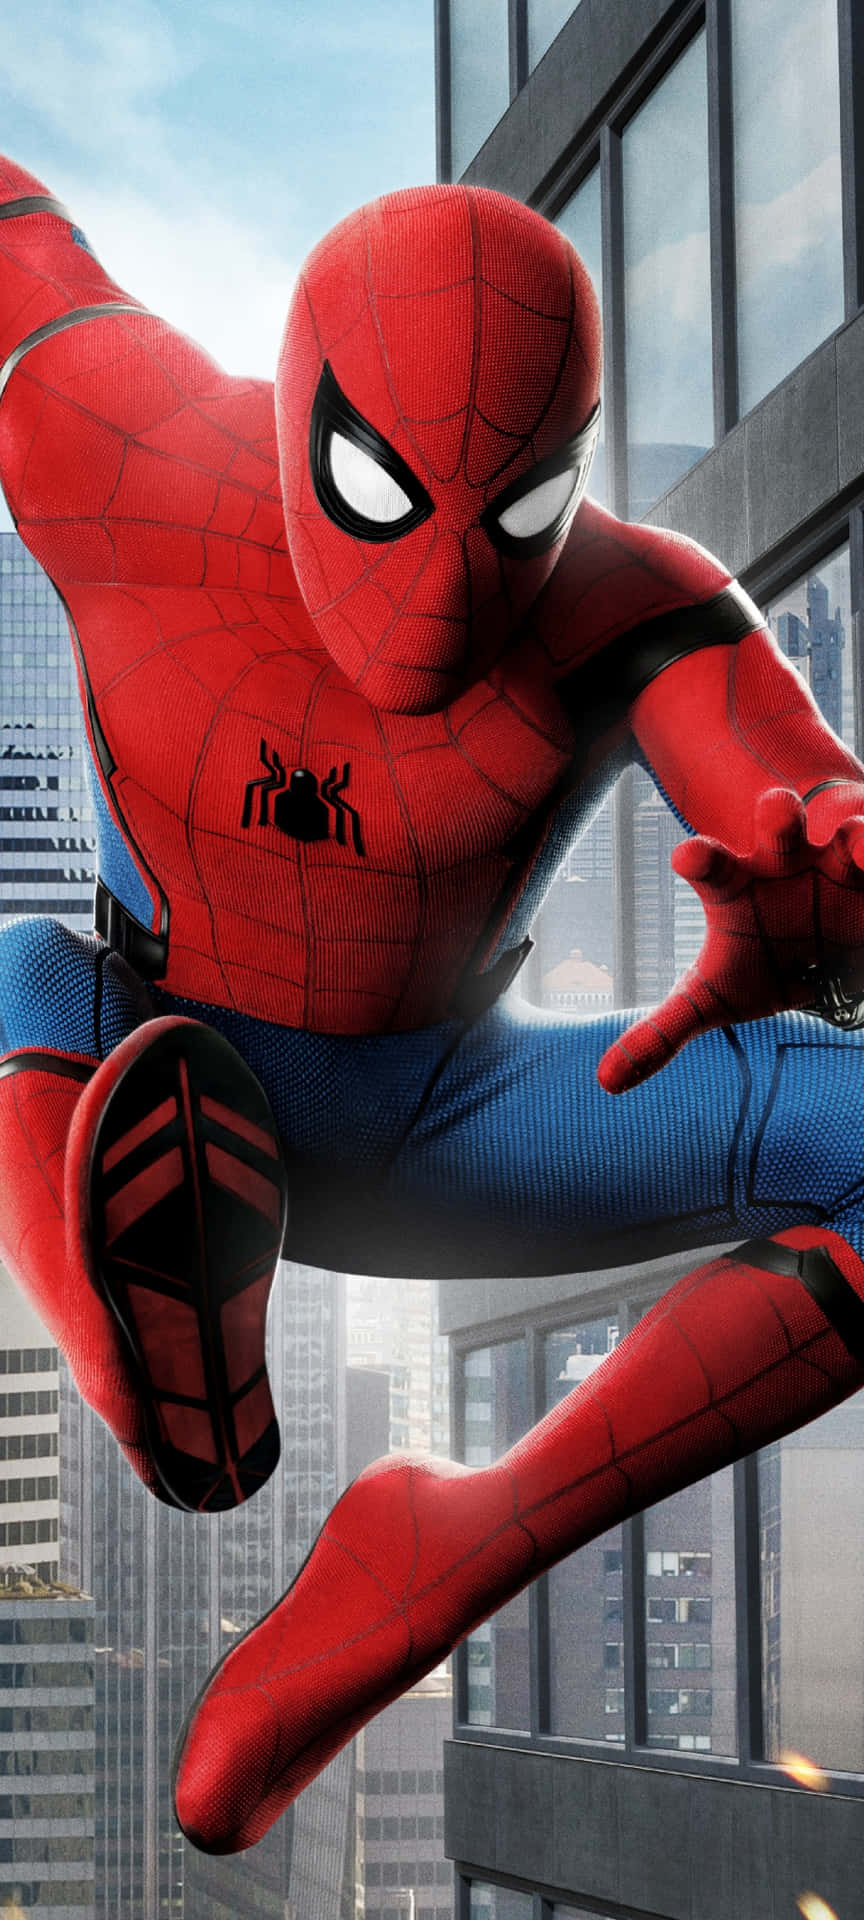 Toaf De Mest Ikoniske Marvel-karakterer, Spiderman Og Iron Man, Står Over For Hinanden. Wallpaper